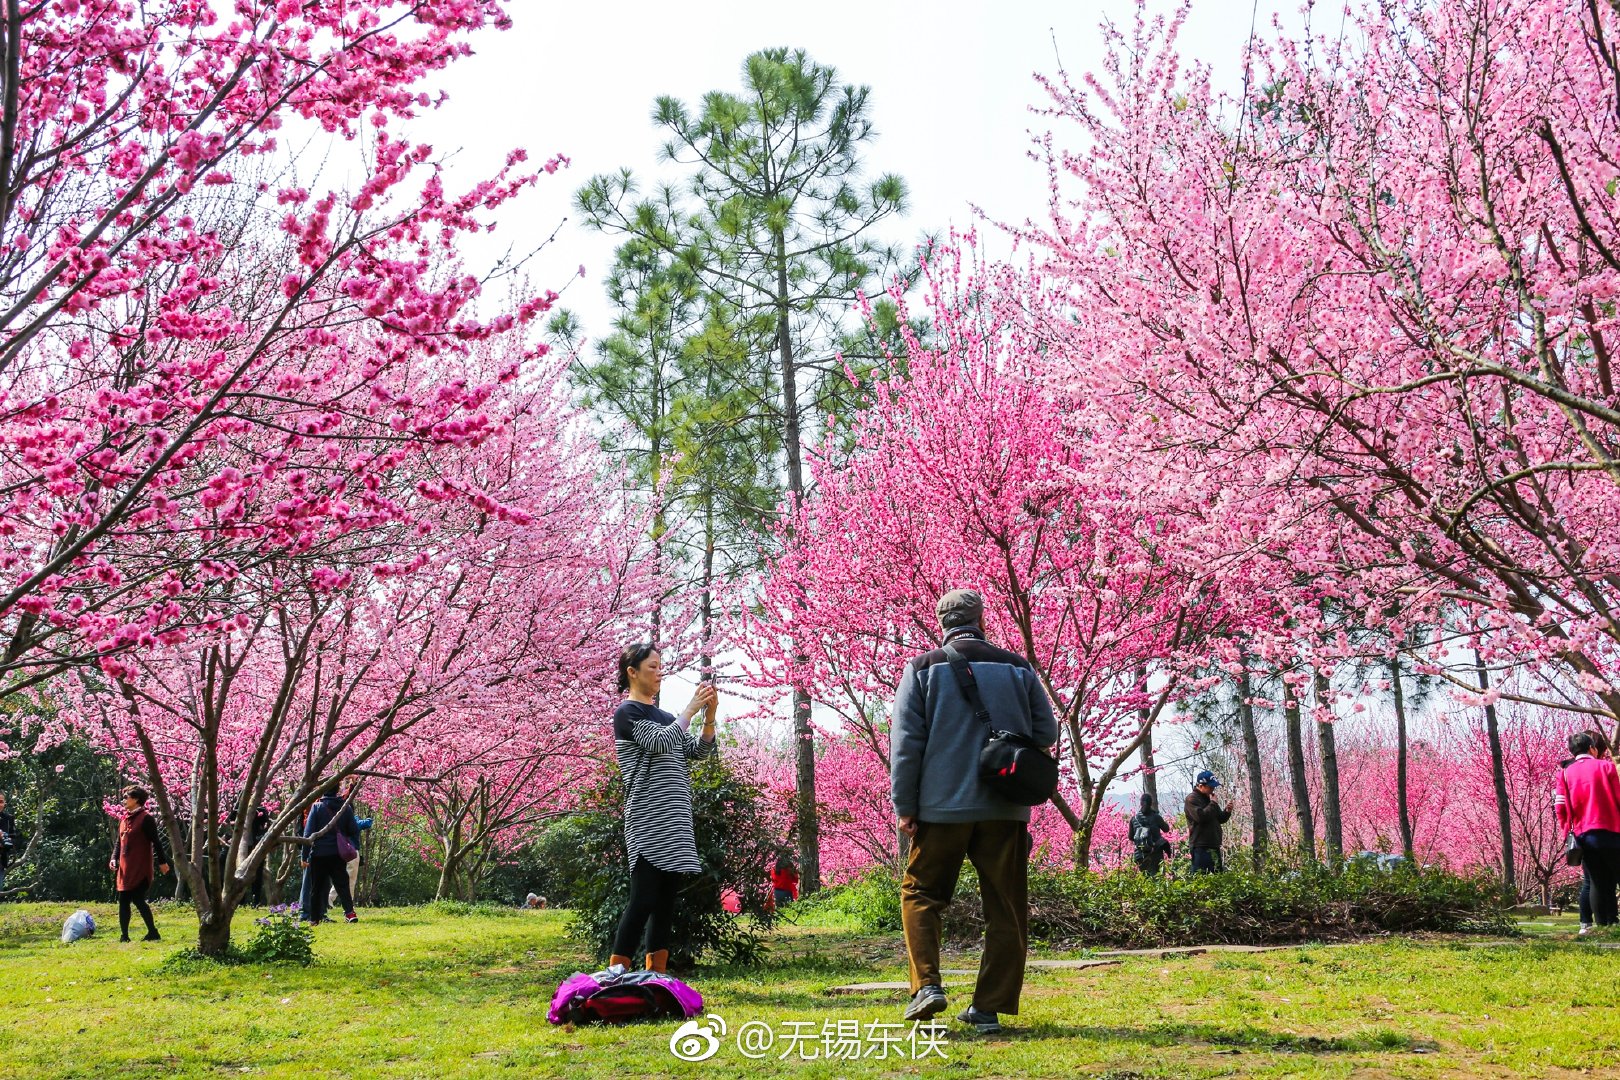 今天的无锡蠡园公园,桃花依旧笑春风人们扬在脸上的笑容